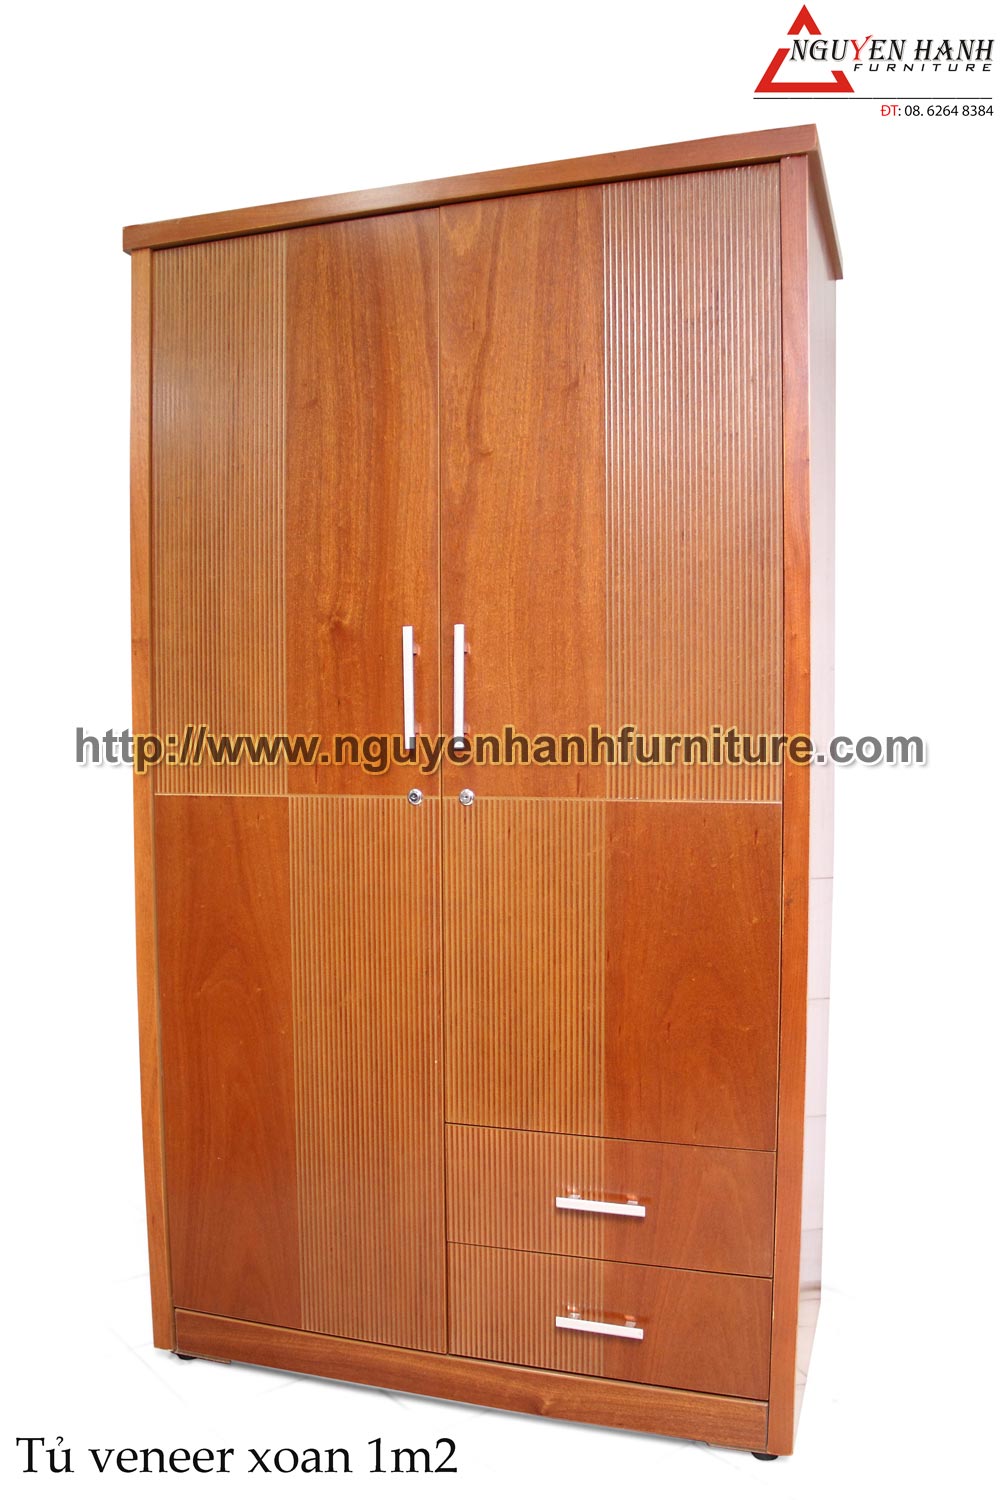 Name product: 1m2 Wardrobe of veneer Rosewood - Dimensions: 58 x 120 x 210cm - Description: Veneer bead tree wood